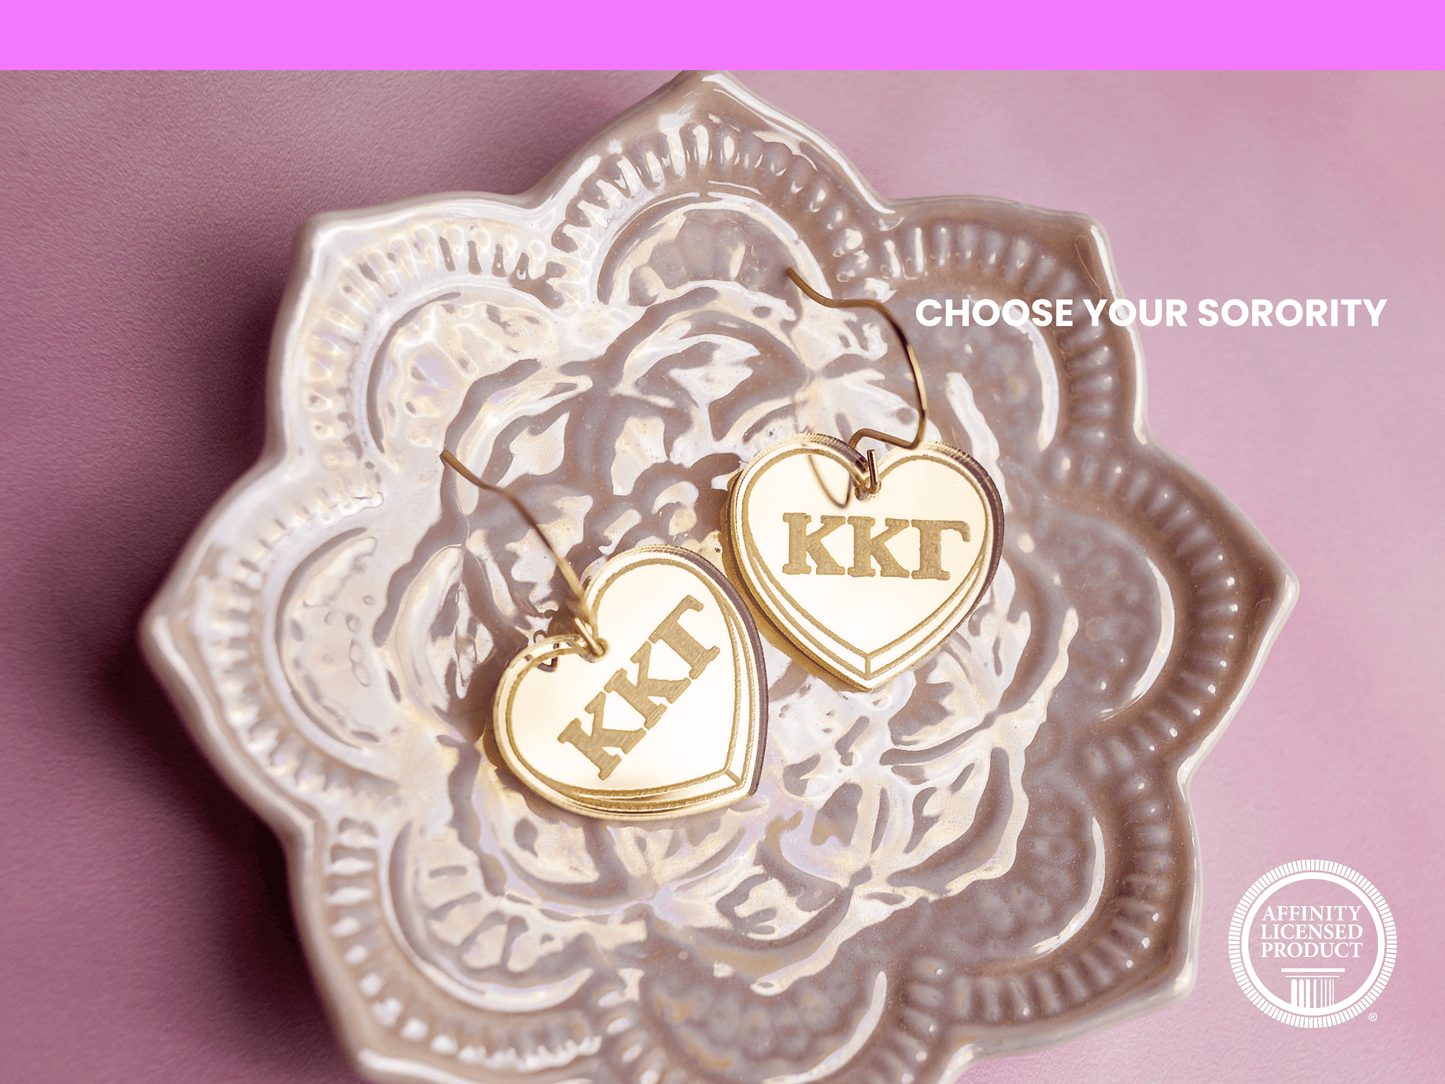 Kappa Kappa Gamma Earrings - Sorority Earrings - Mirror Conversation Hearts in Gold Pink or Silver